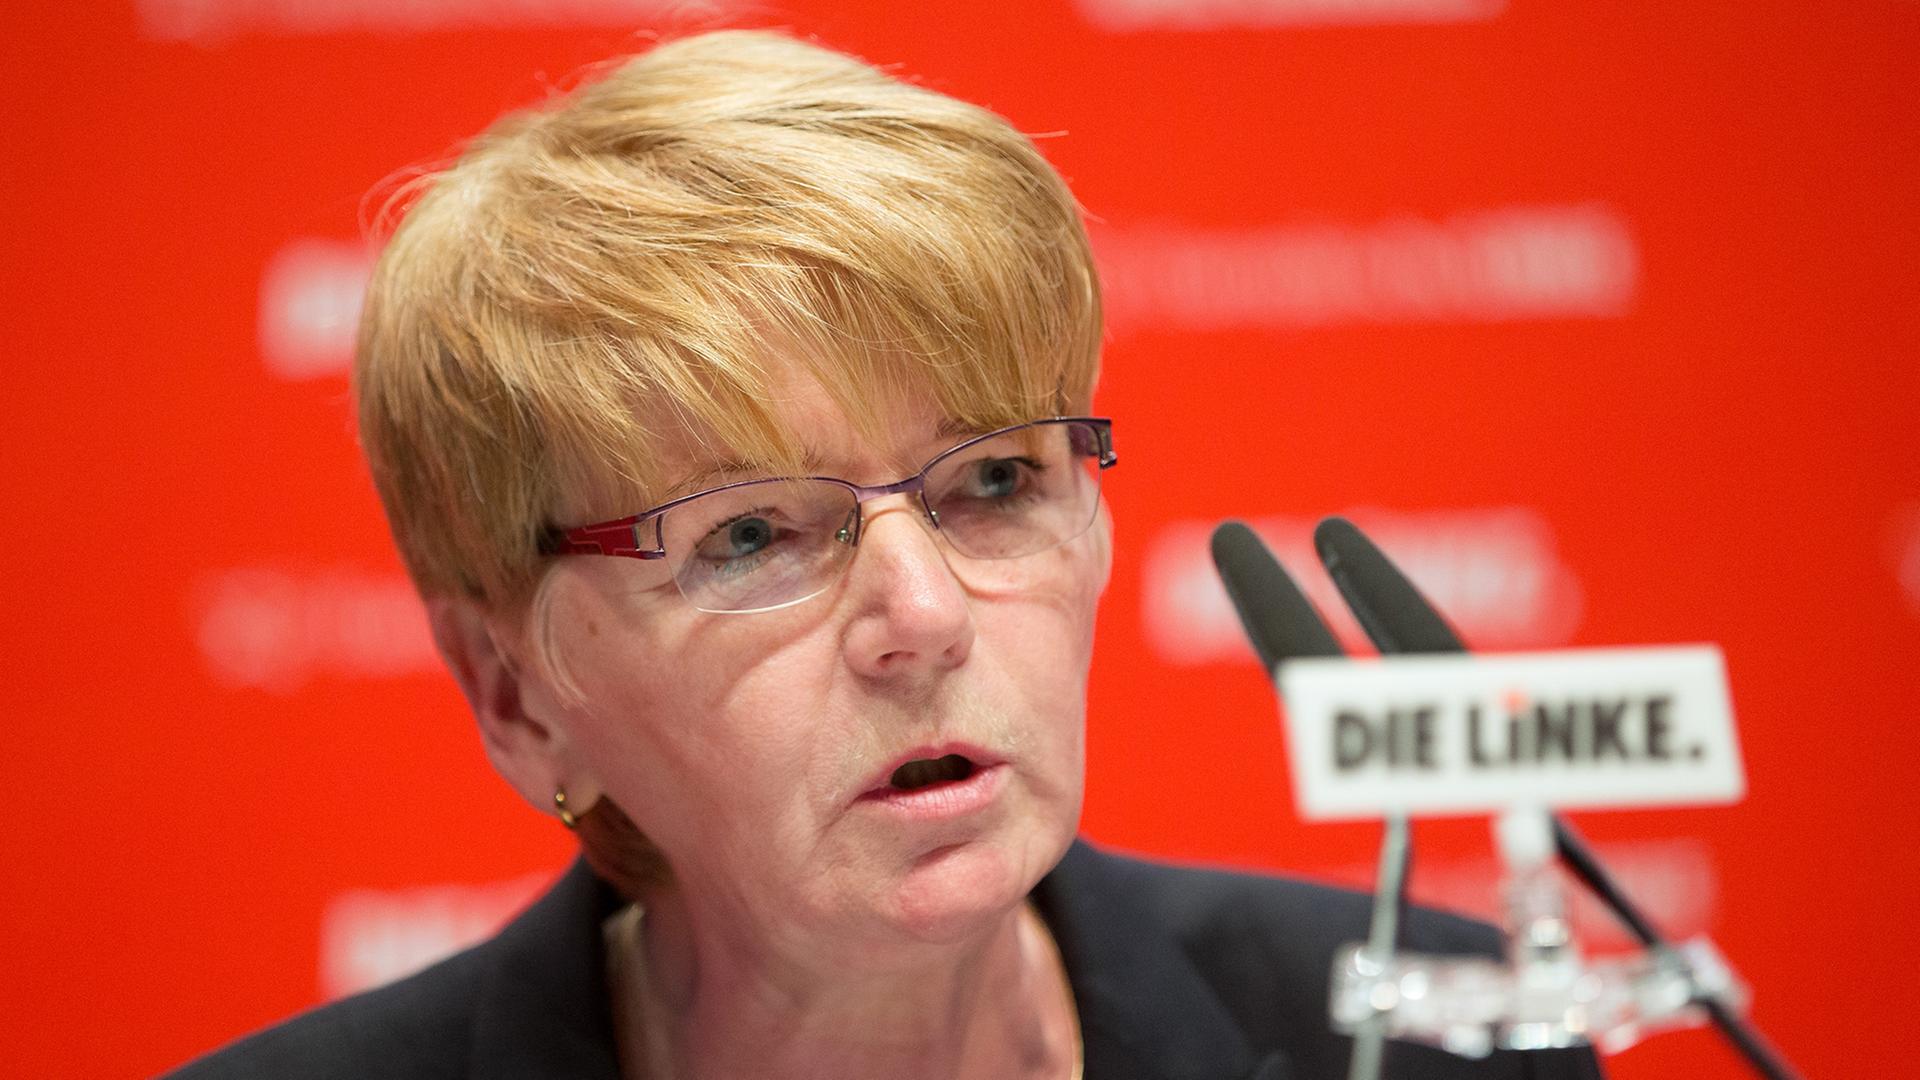 Die Spitzenkandidatin Gabi Zimmer während des Parteitags der Linkspartei in Berlin.